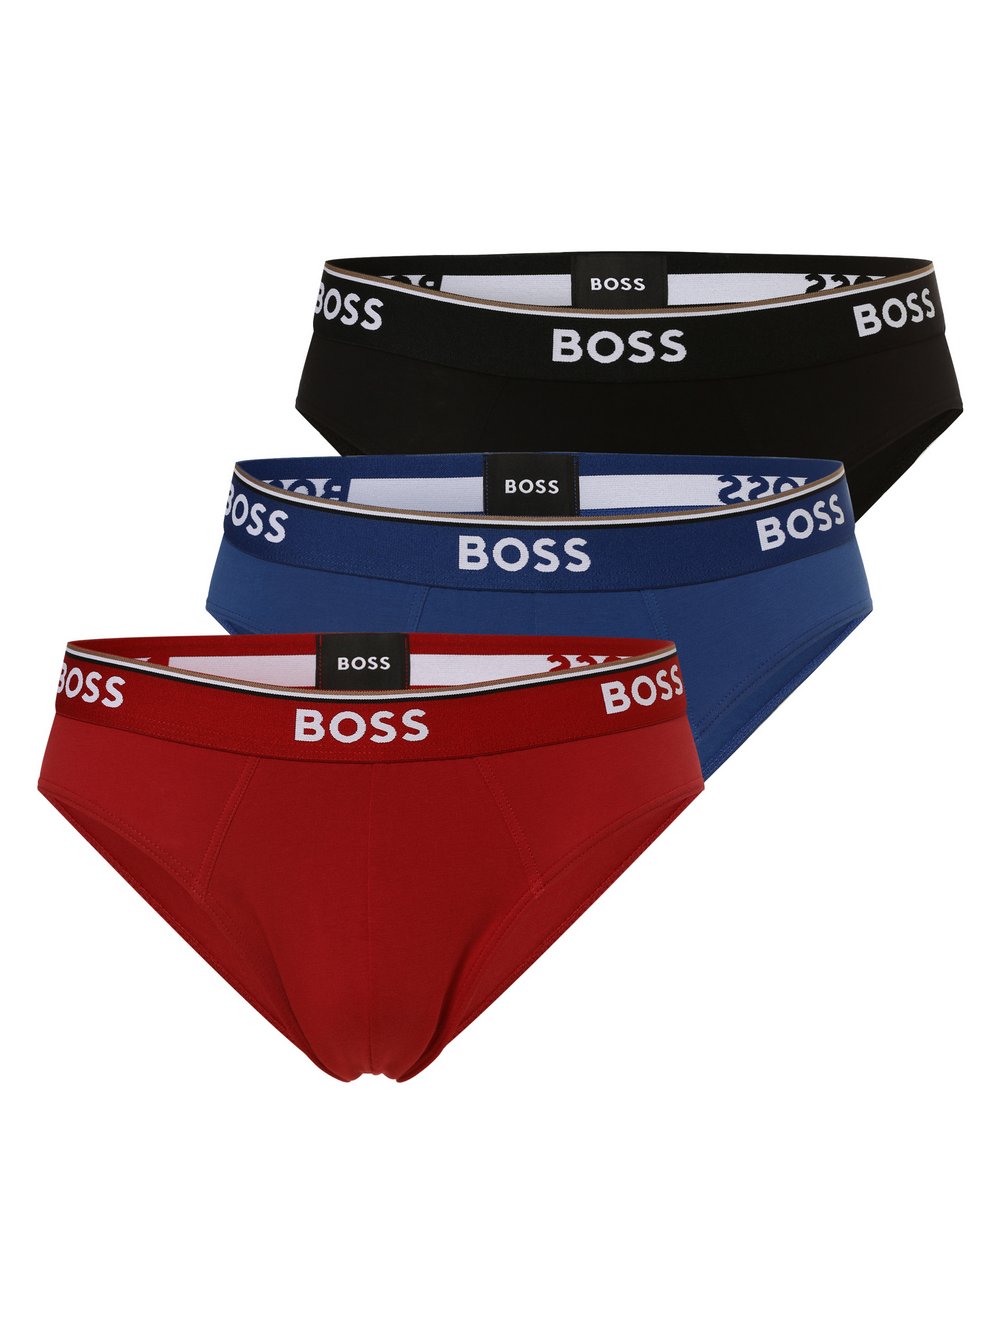 BOSS - Slipy męskie pakowane po 3 szt., czerwony|niebieski|czarny